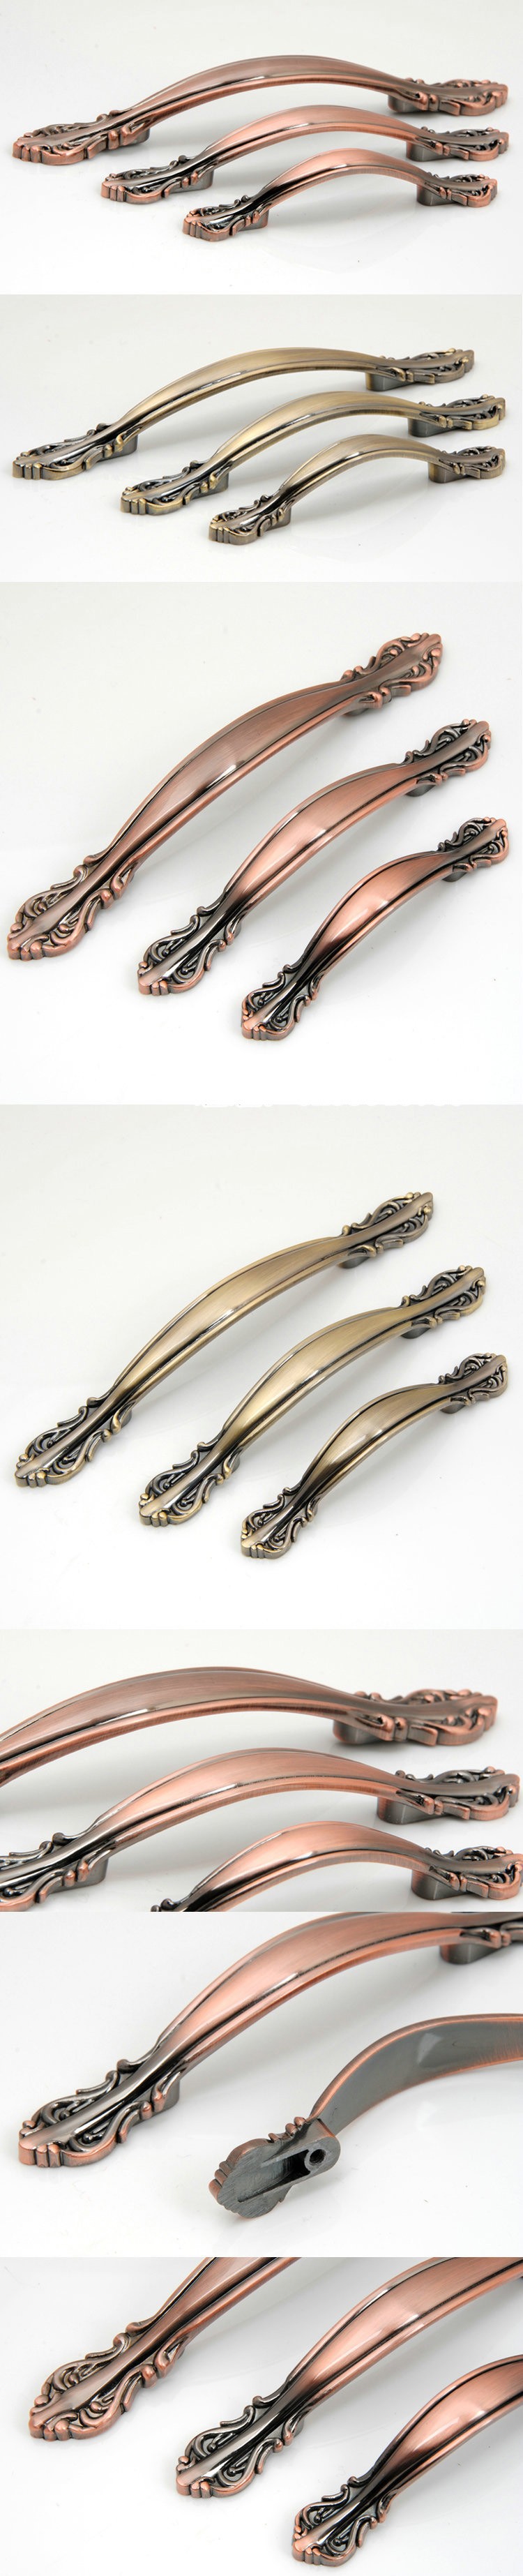 96mm Antique bronze door handles and knobs/ drawer pulls &knobs